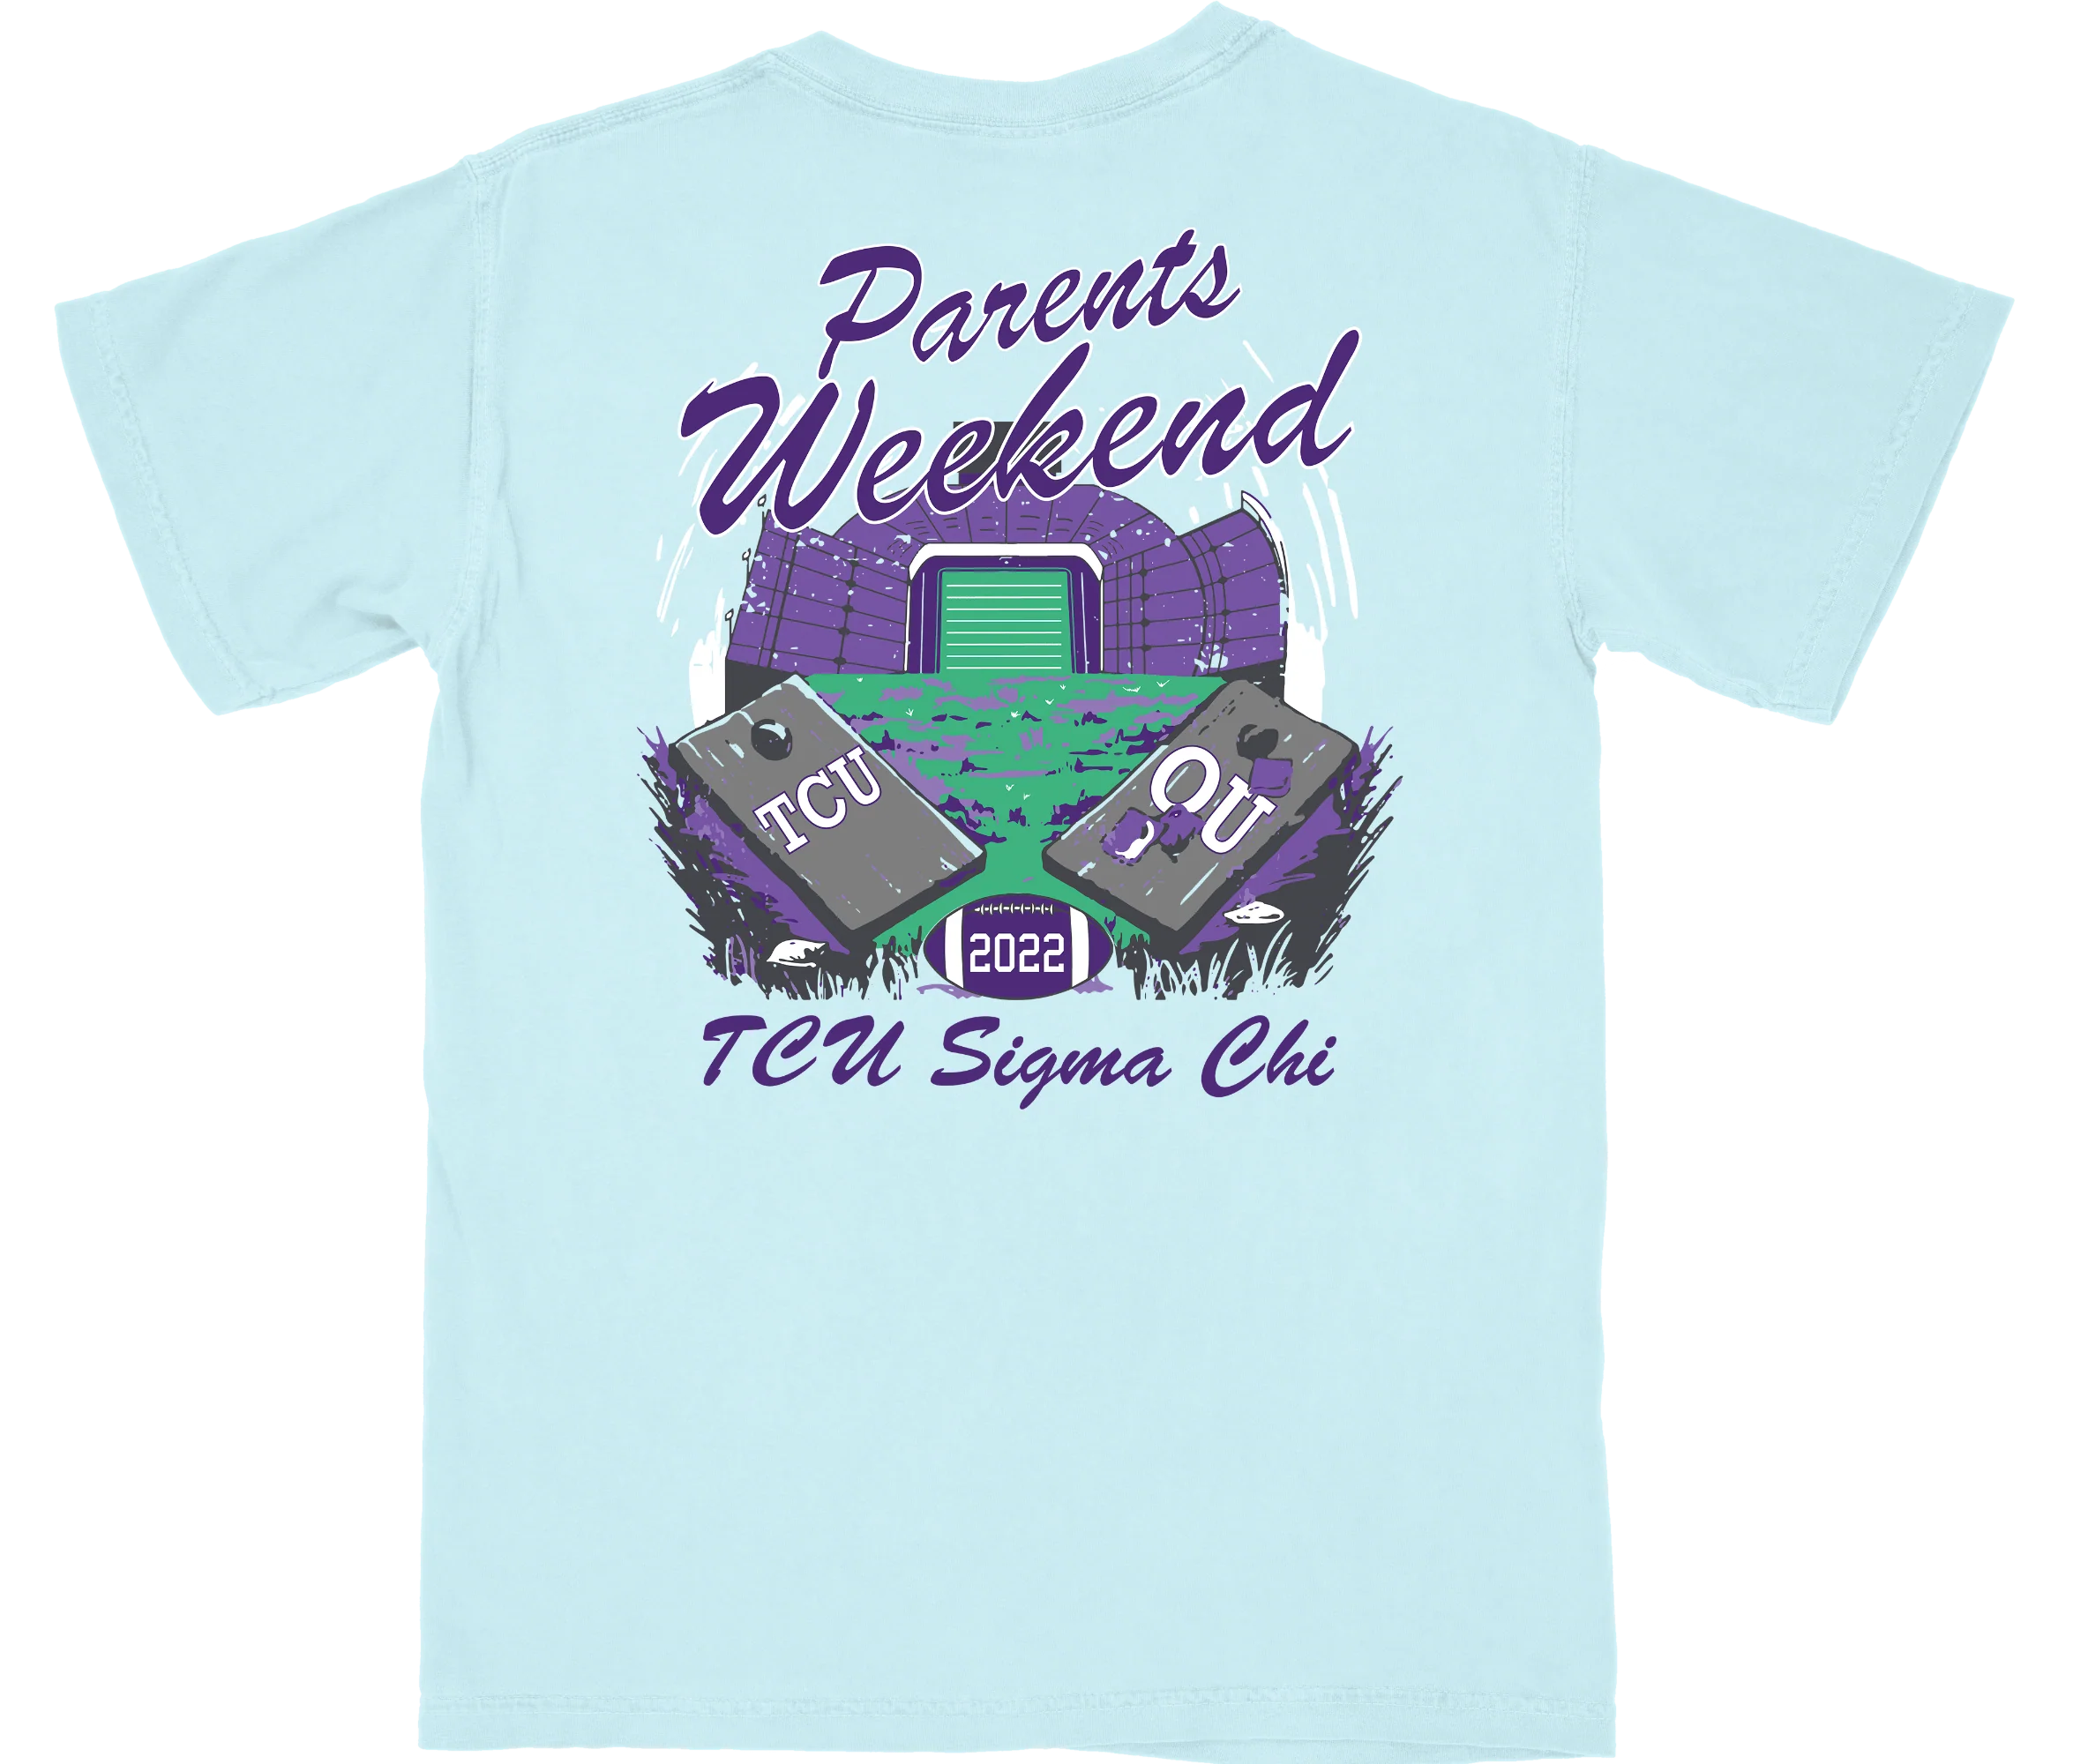 TCU Sigma Chi Parents Weekend Shirt